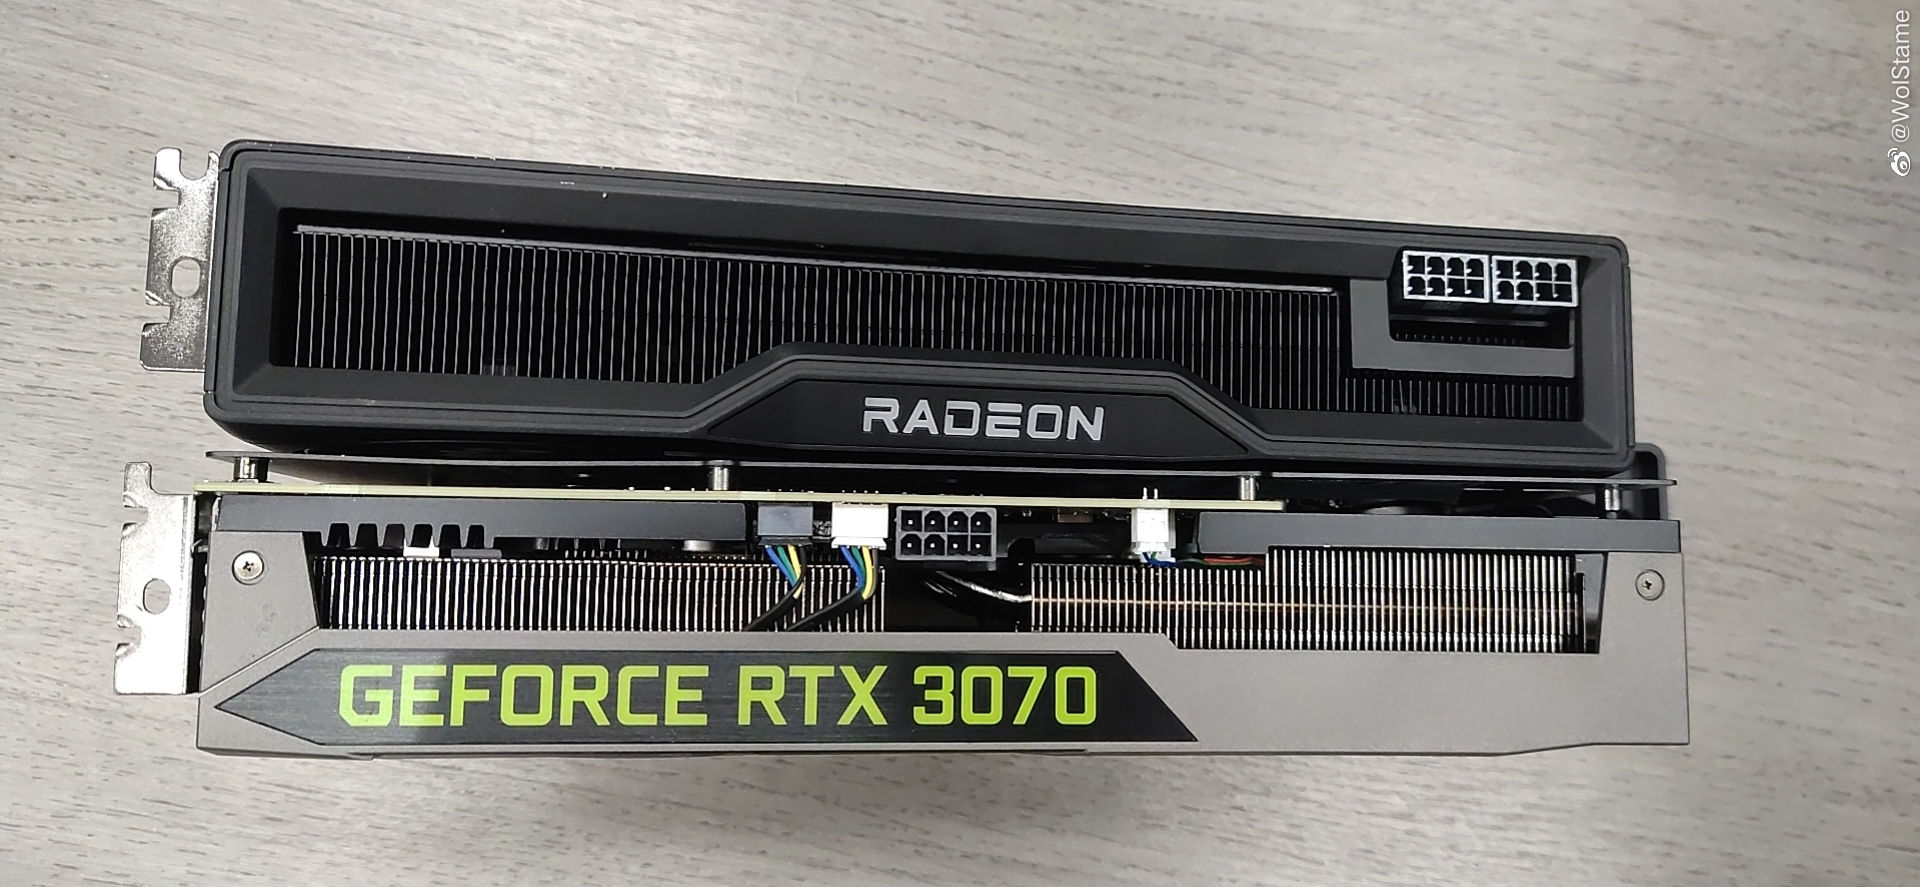 Immagine pubblicata in relazione al seguente contenuto: Foto di una AMD Radeon RX 6800 XT accanto a una NVIDIA GeForce RTX 3070 | Nome immagine: news31311_Radeon-RX-6800-XT_2.jpg